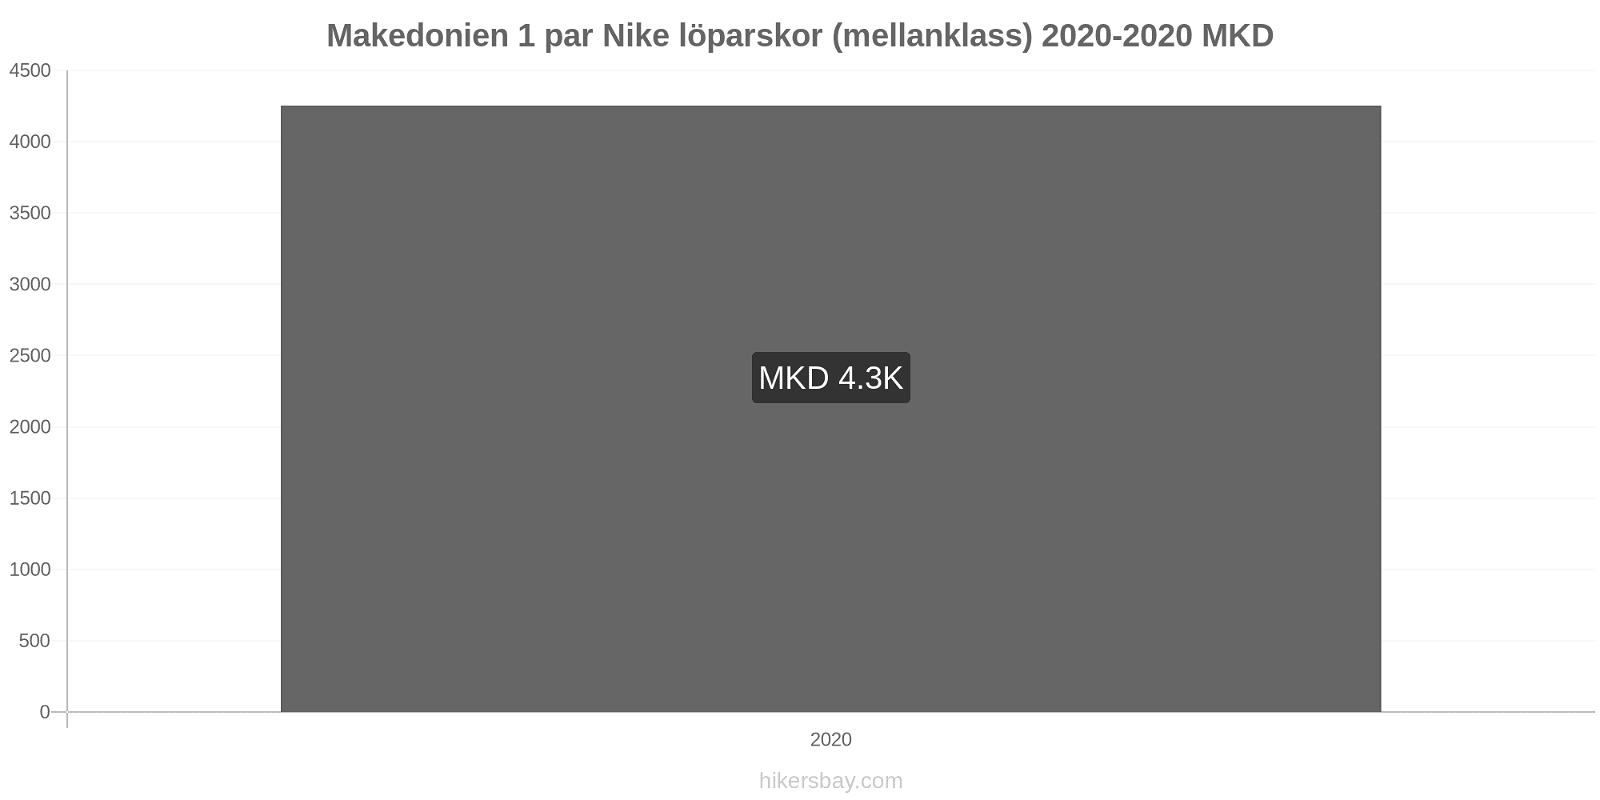 Makedonien prisförändringar 1 par Nike löparskor (mellanklass) hikersbay.com